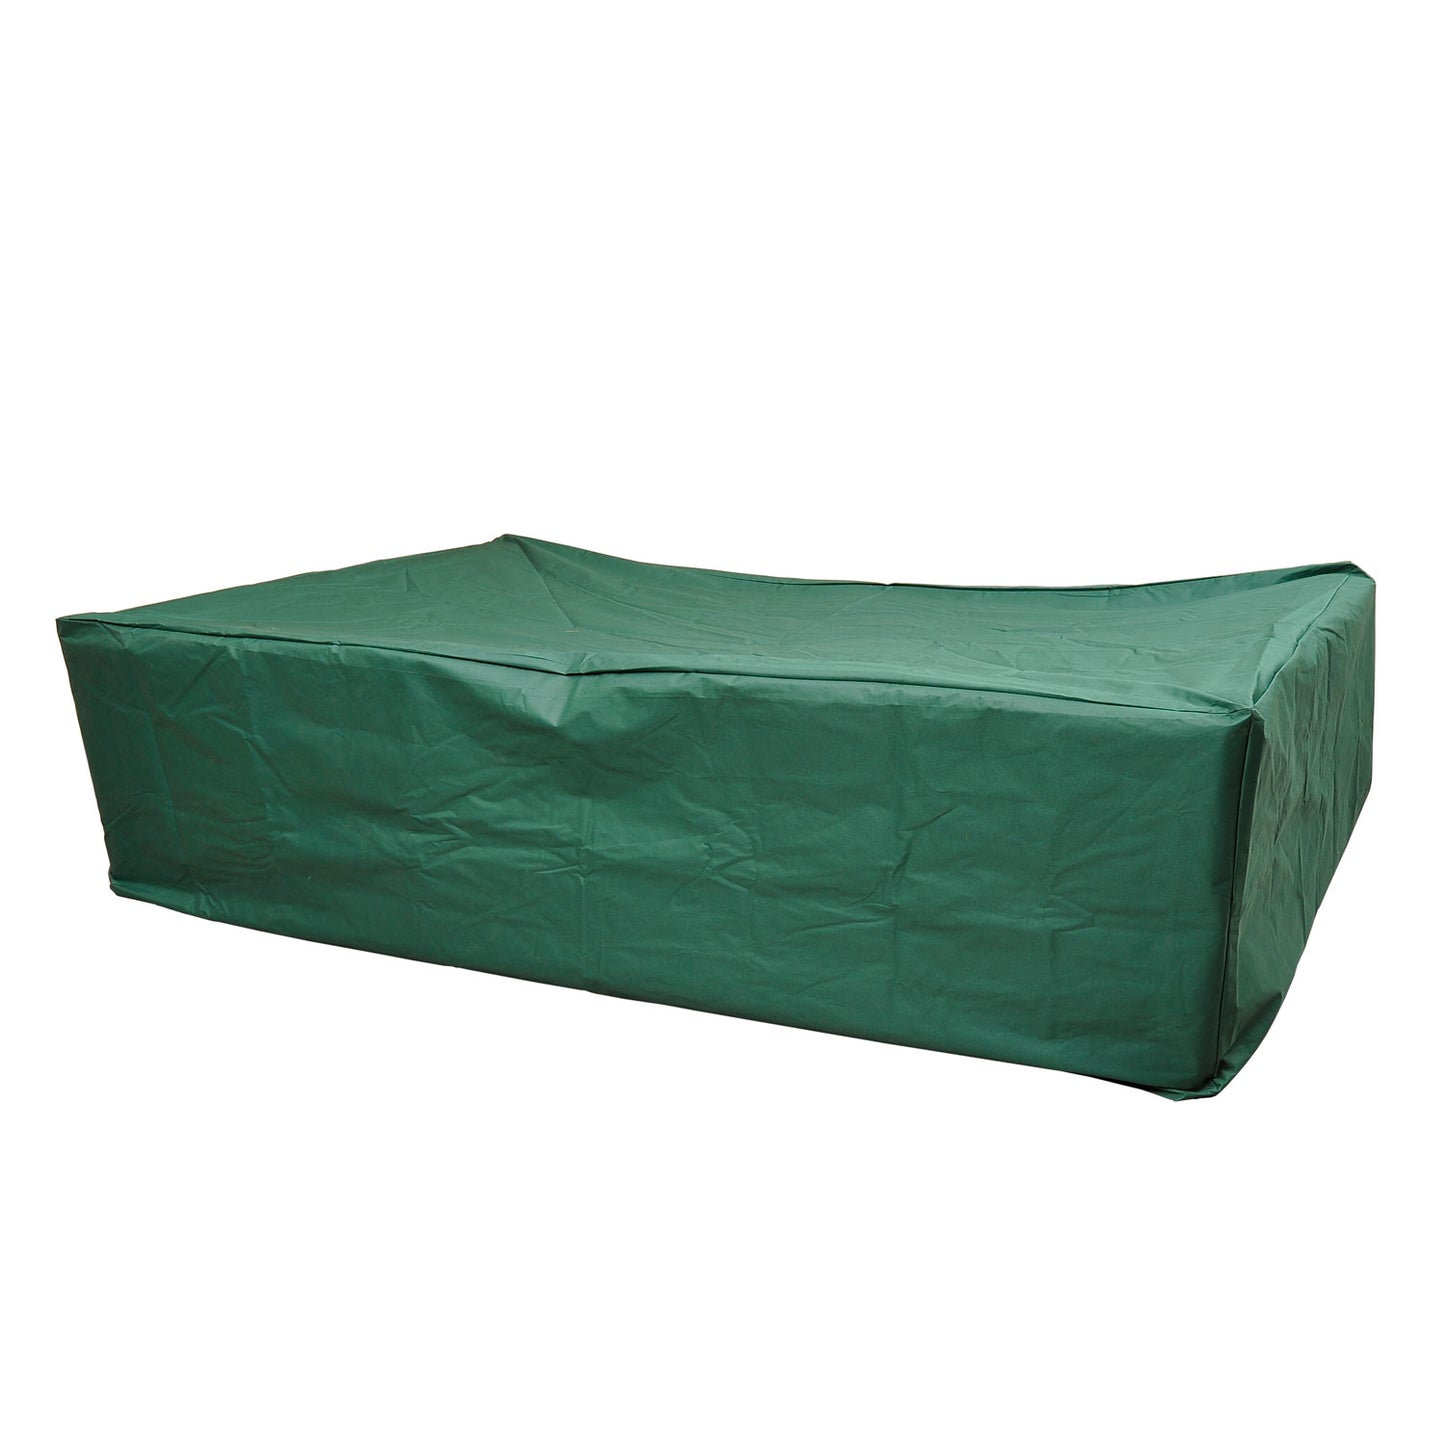 Outsunny UV/Rain Protective Rattan Furniture Cover, 205x145x70 cm-Green